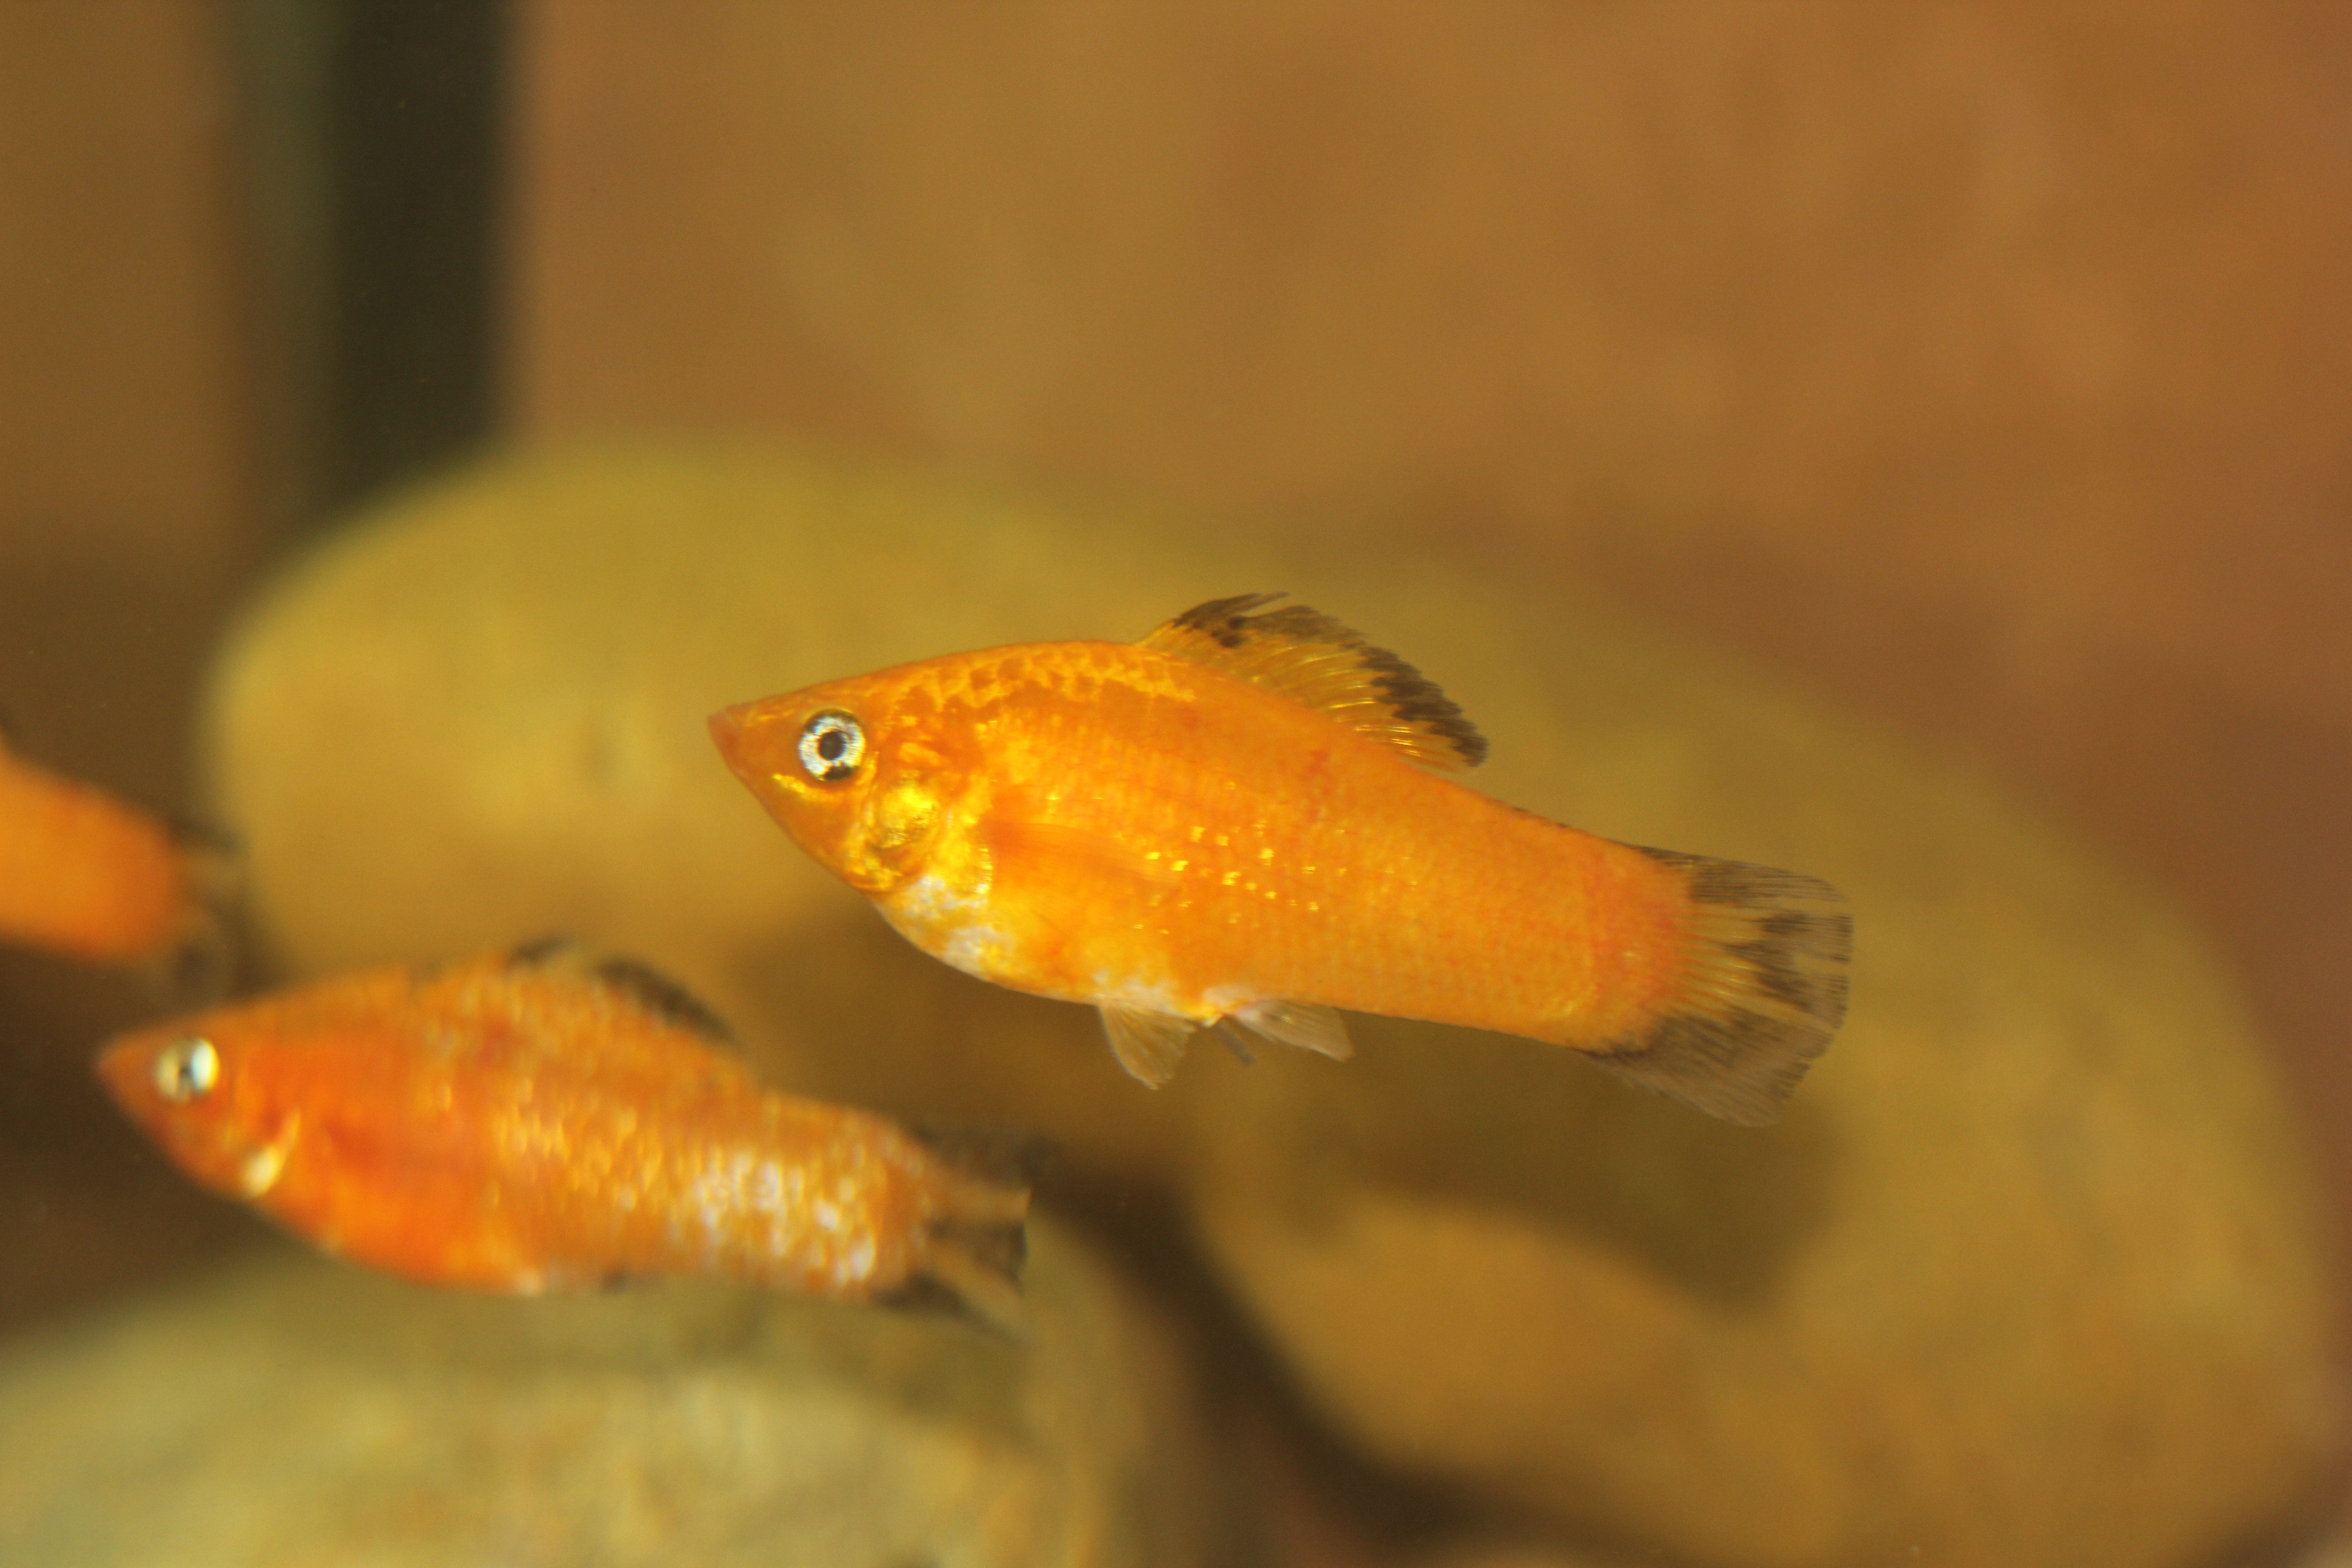 Two juvenile Orange Sailfin Mollies